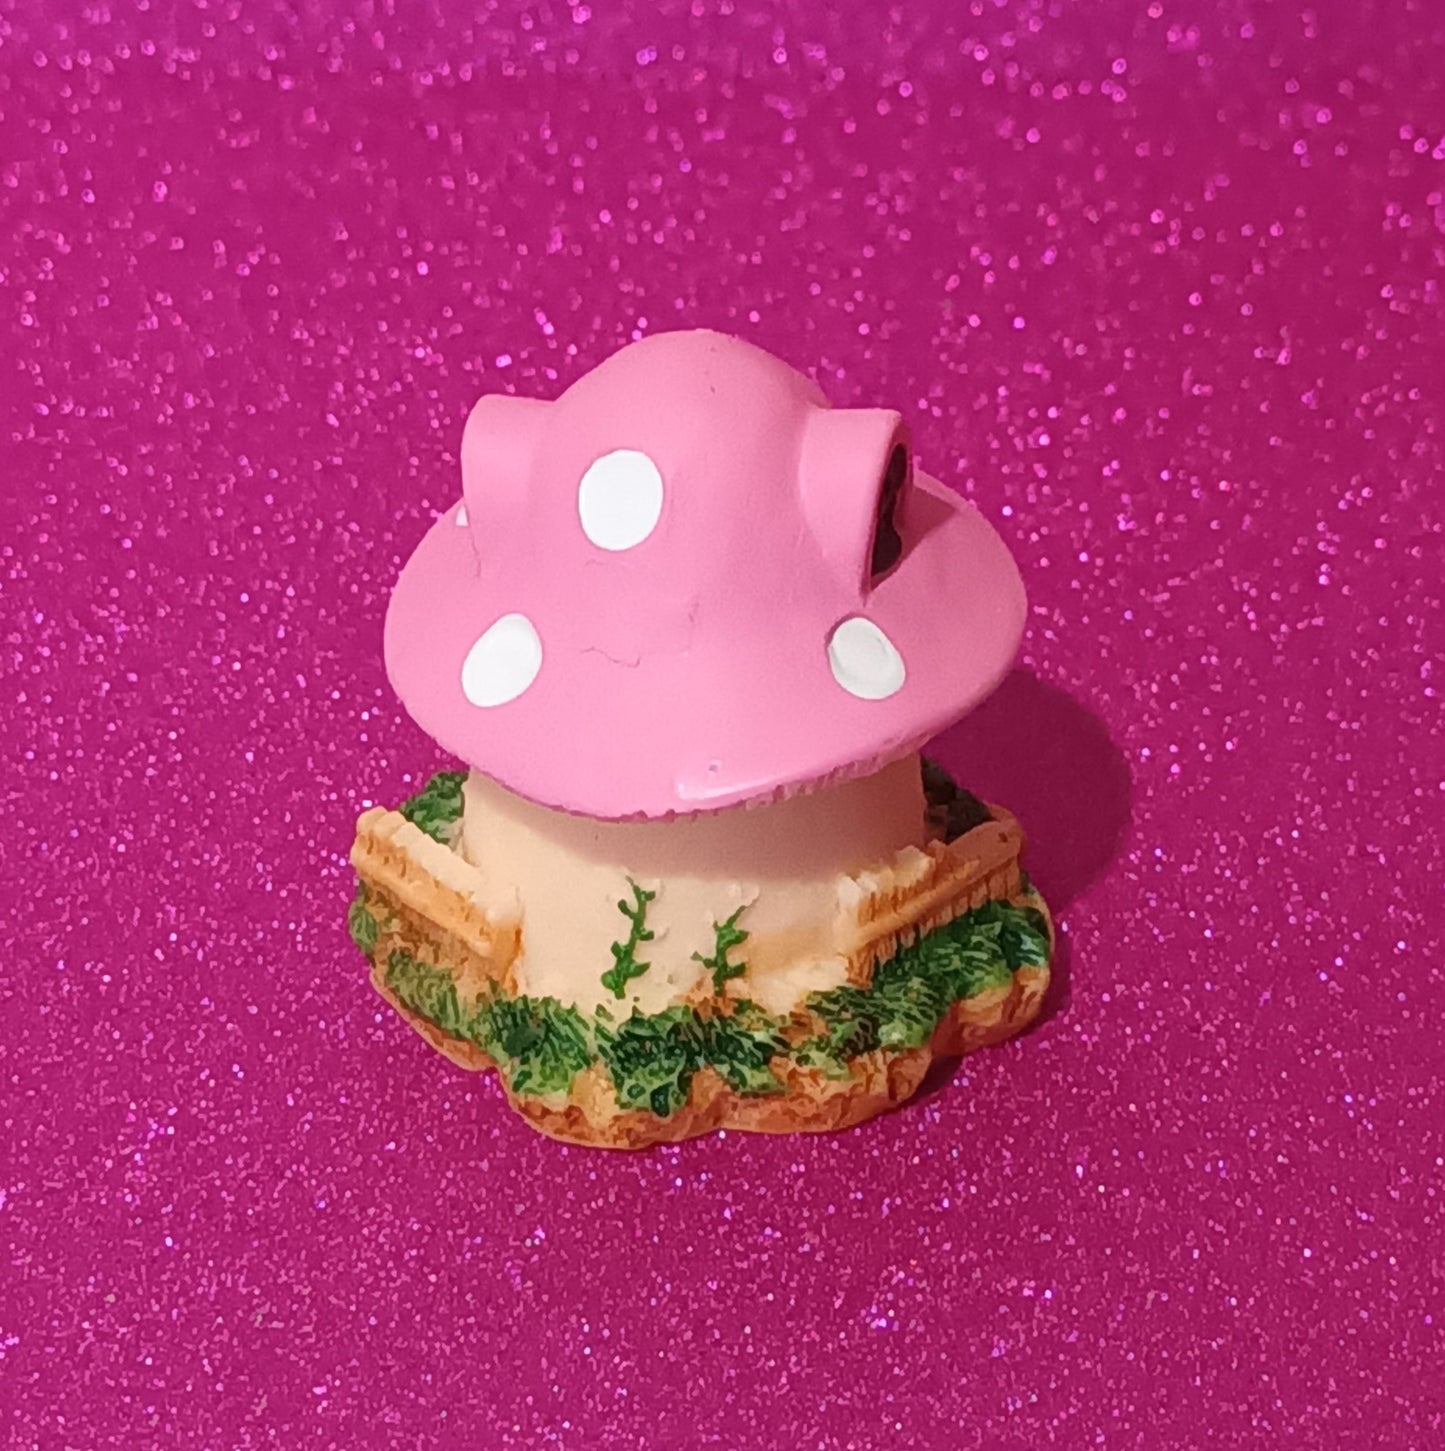 Miniature Mushroom House #4